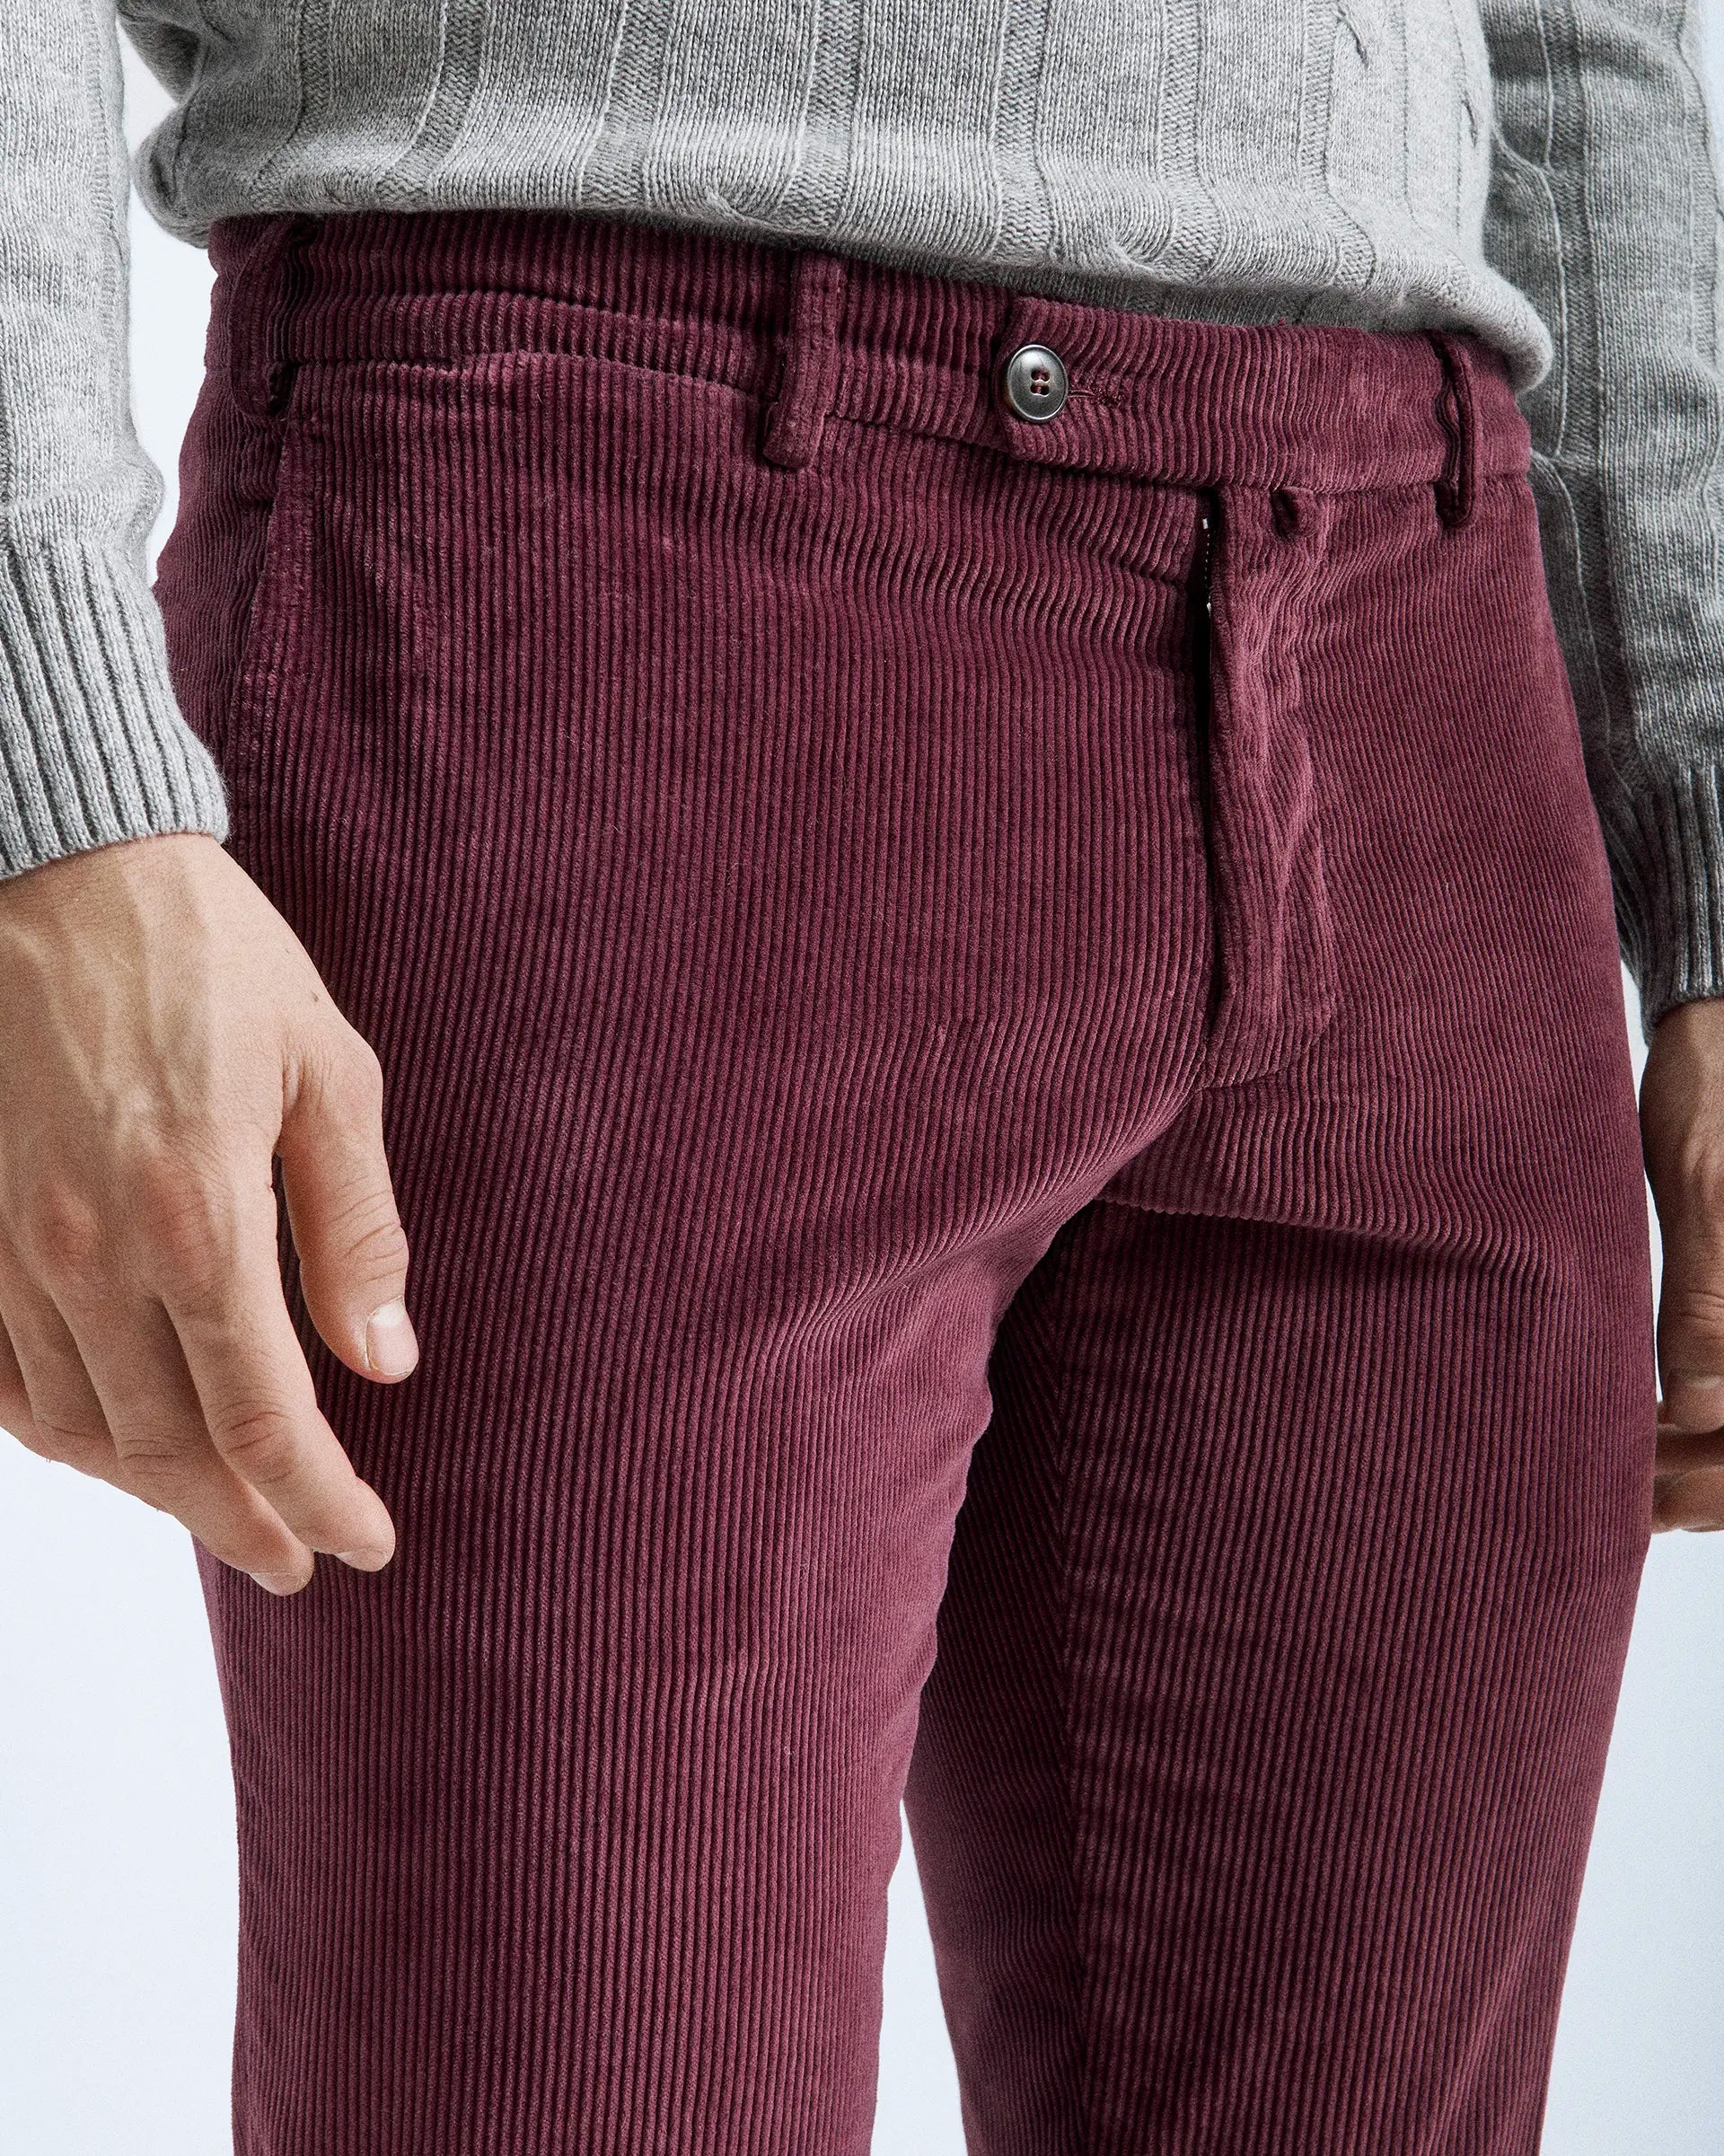 Pantalone bordeaux in velluto 500 righe in cotone e lyocell